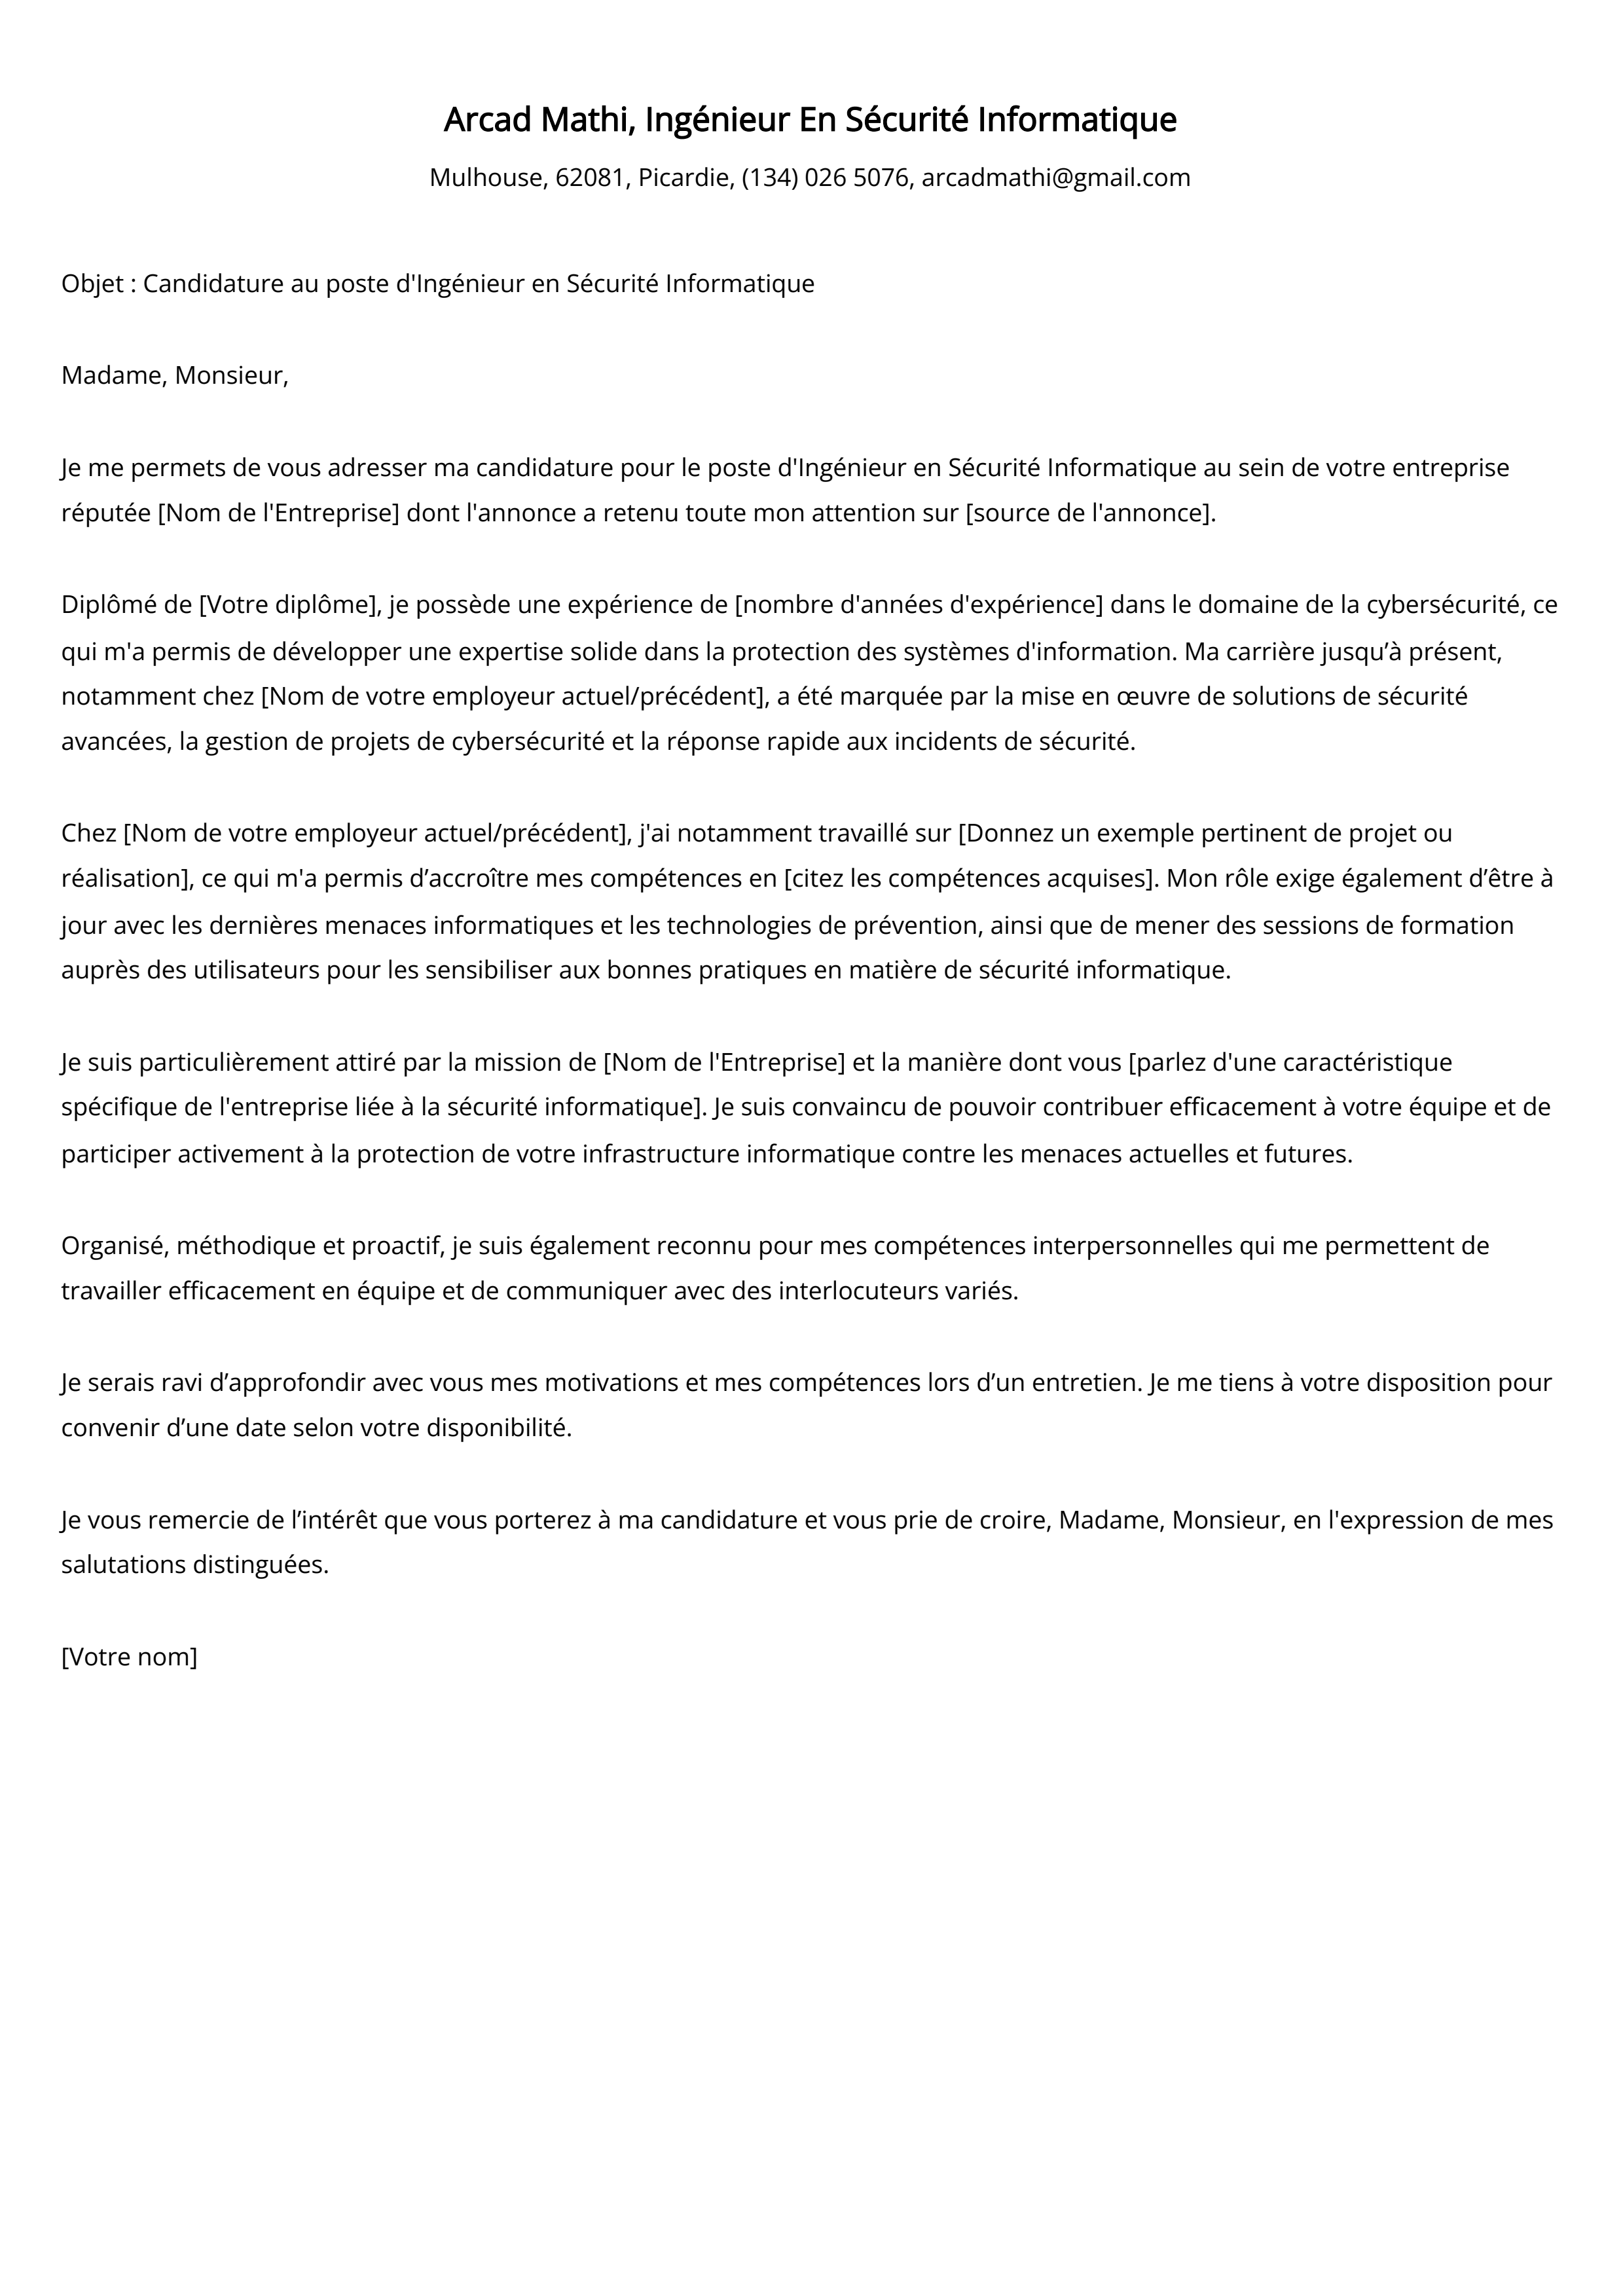 Ingénieur En Sécurité Informatique Cover Letter Example